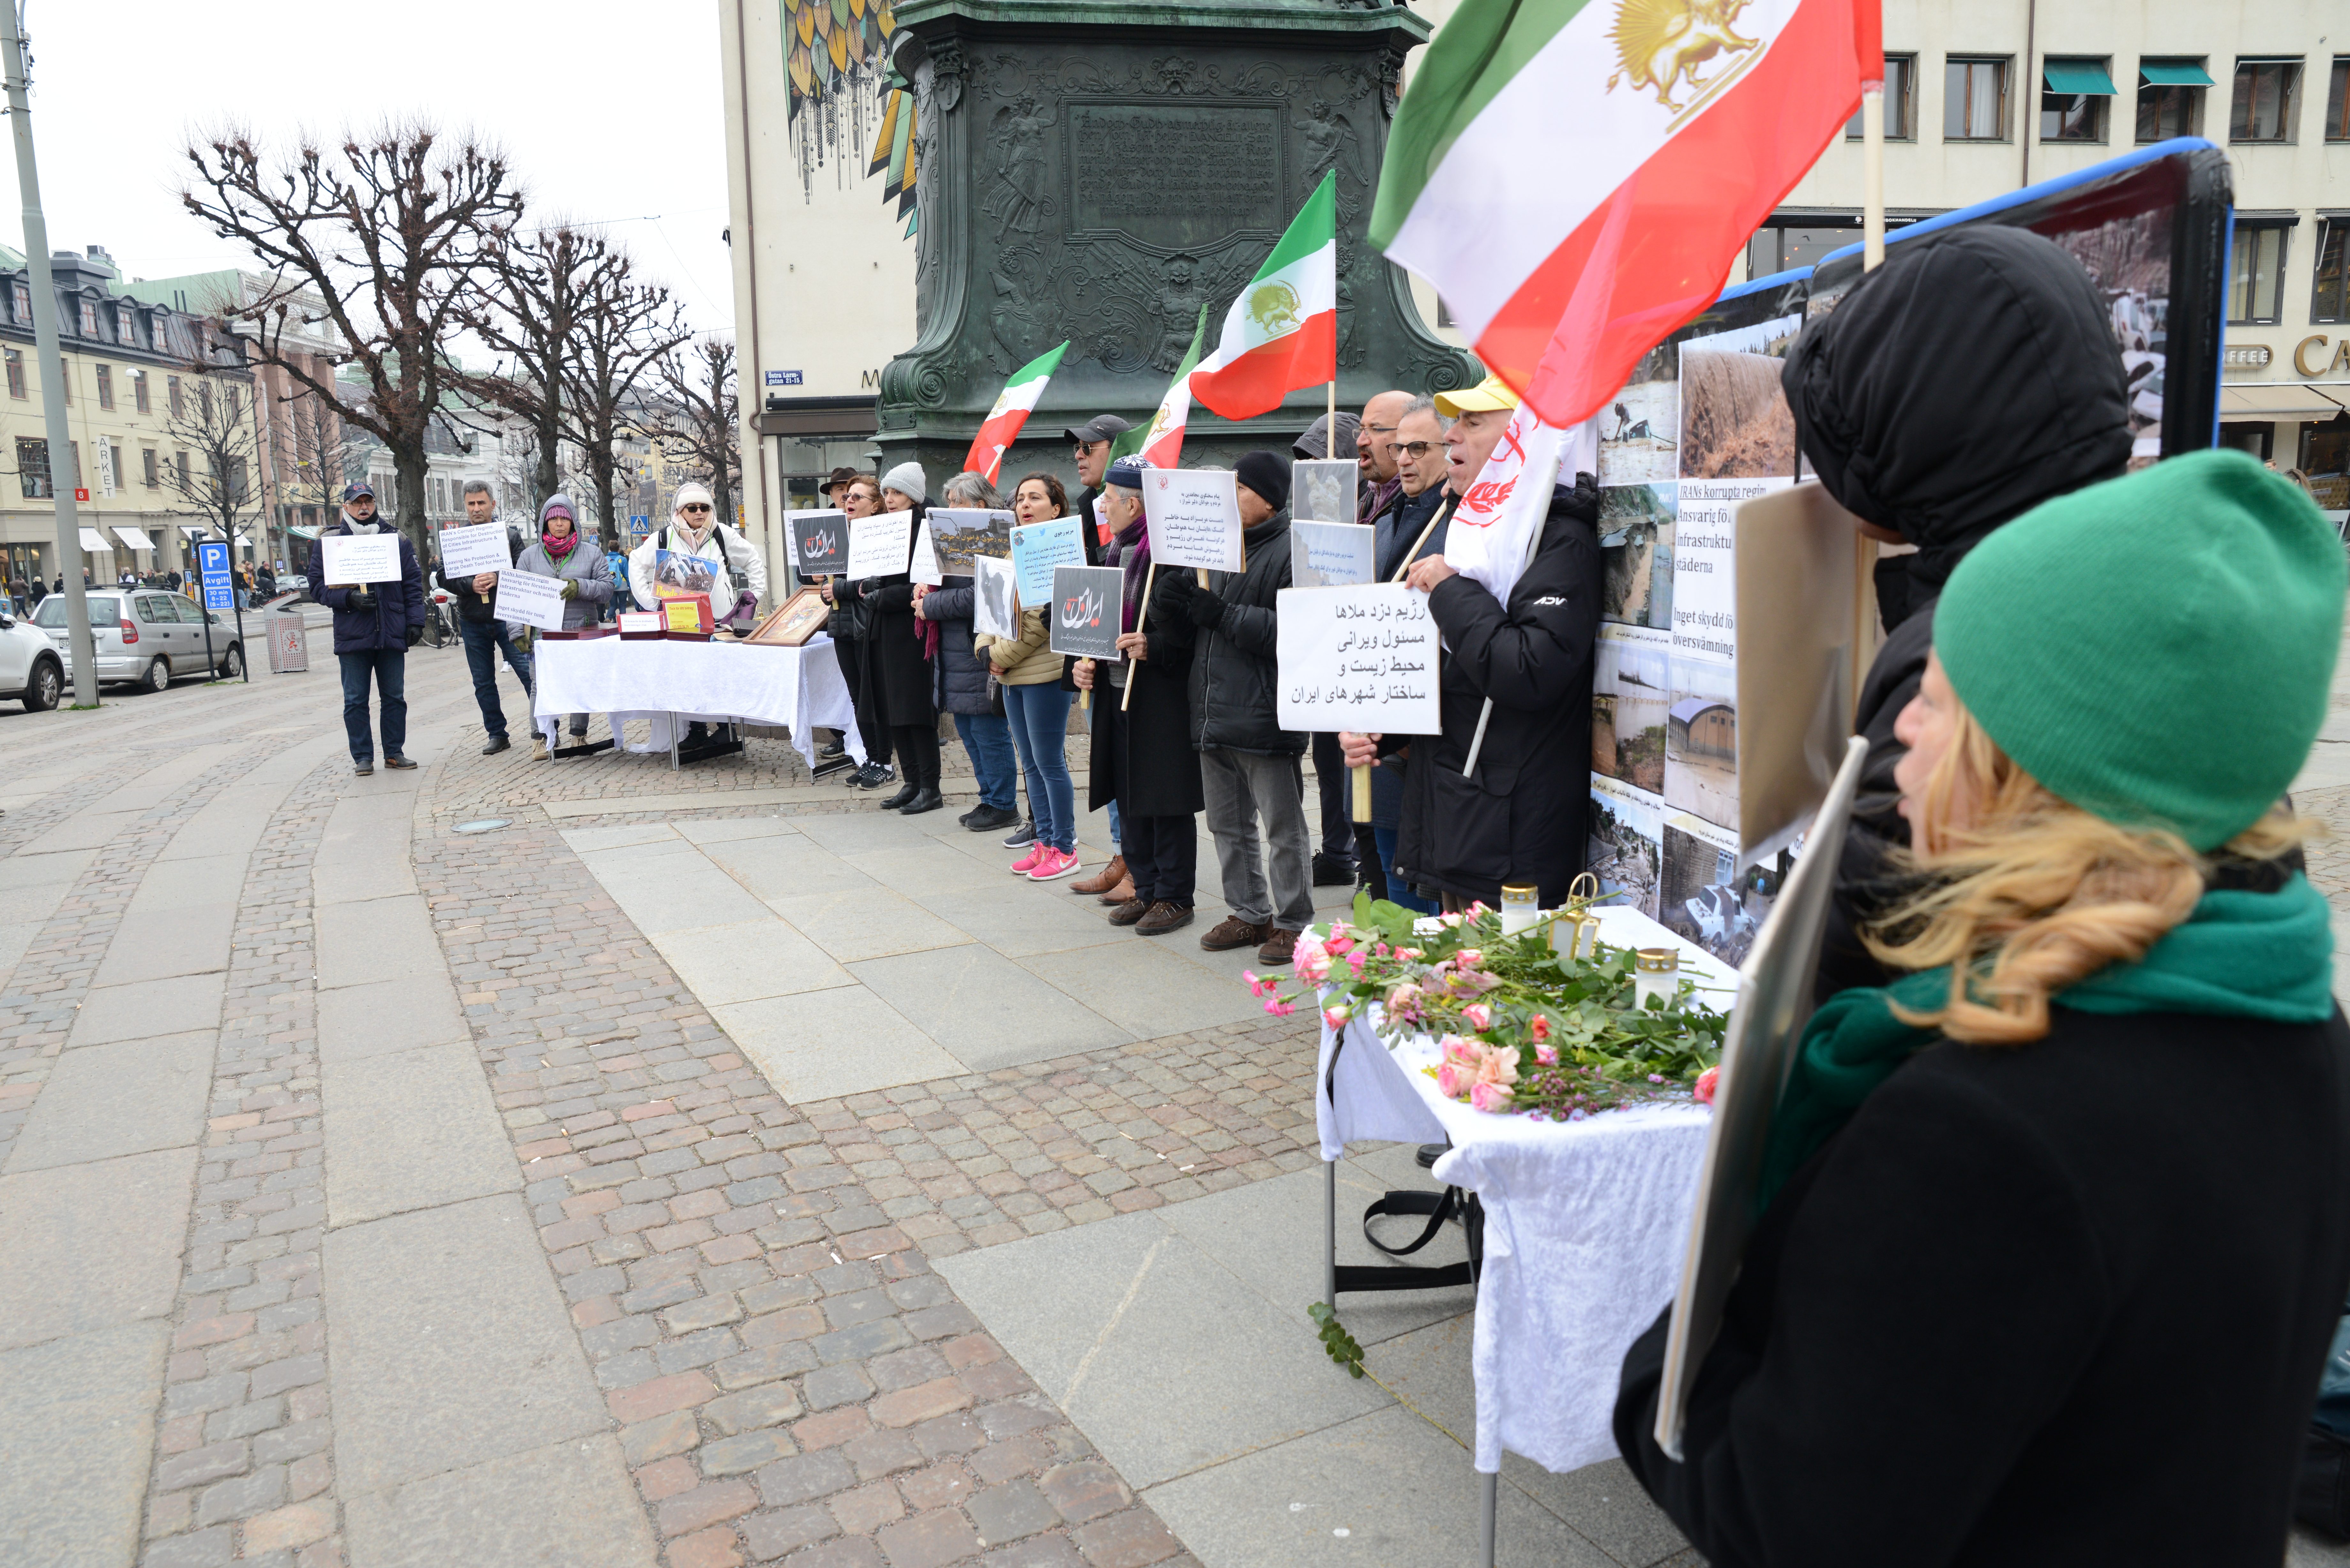 Stödaktion i Göteborg i solidaritet med översvämningsoffer i Iran